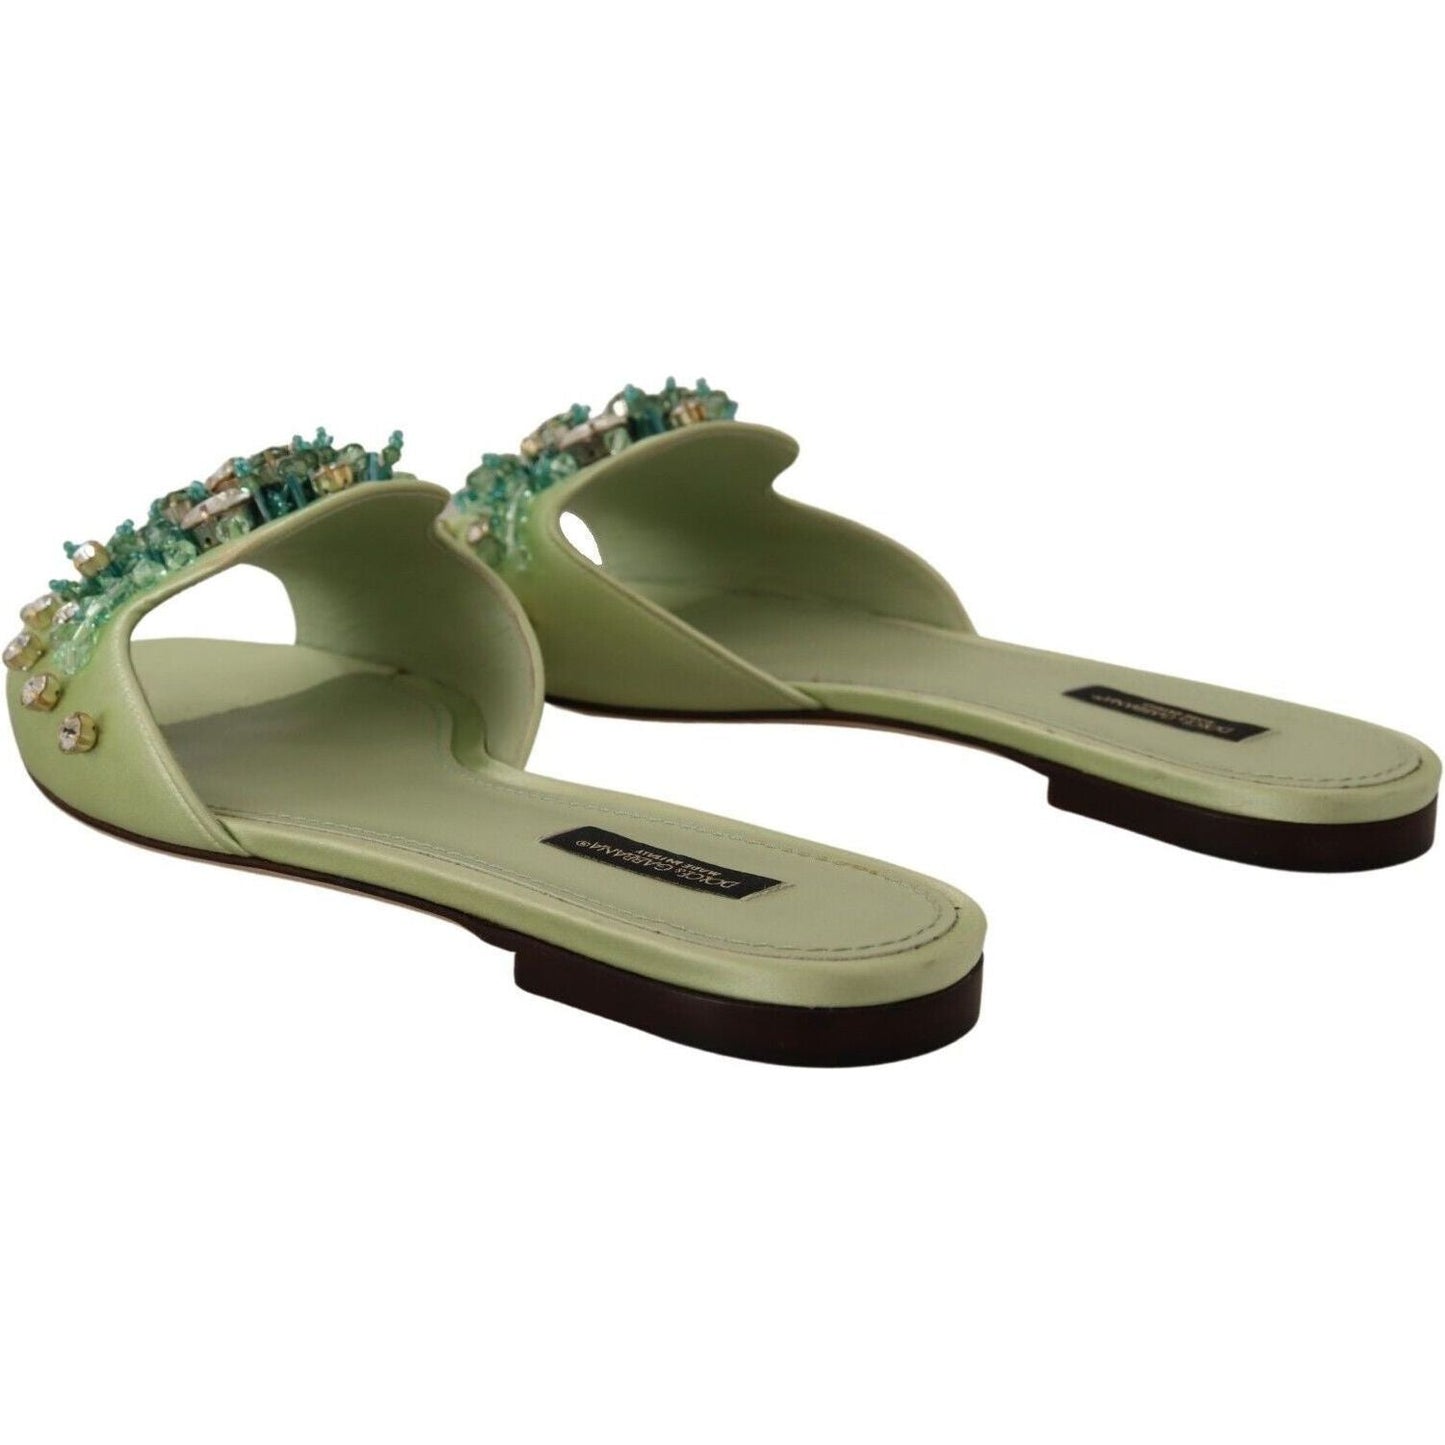 Dolce & Gabbana Elegant Crystal-Embellished Green Leather Slides green-leather-crystals-slides-women-flats-shoes s-l1600-3-135-e2f57b60-de5_03eed3b8-990b-483a-8872-3f121d5e80ff.jpg